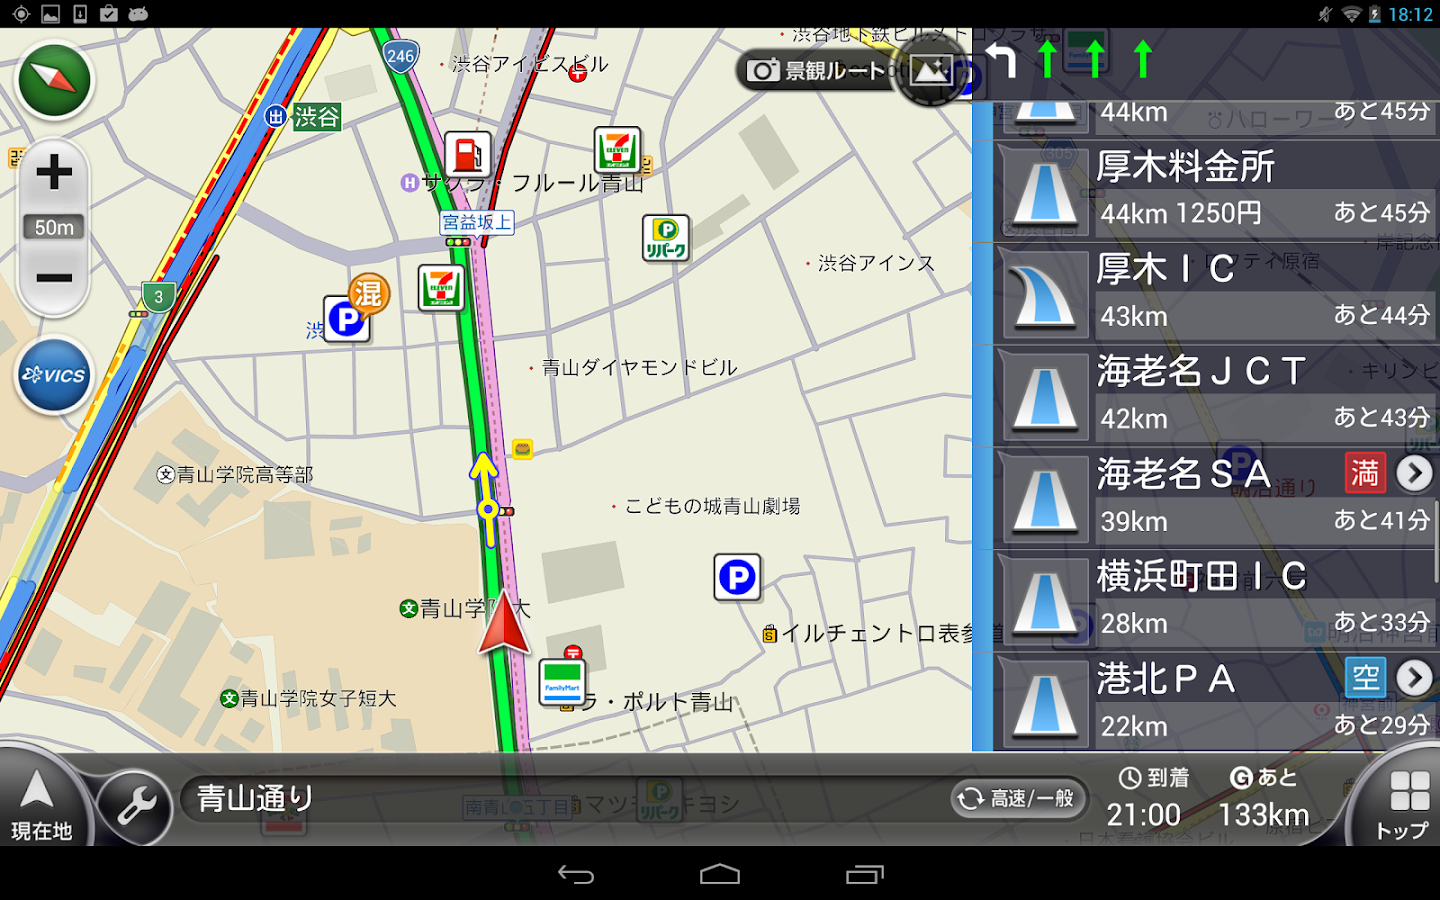 カーナビ/渋滞/オービス-NAVITIMEドライブサポーター - Android Apps on ...1440 x 900